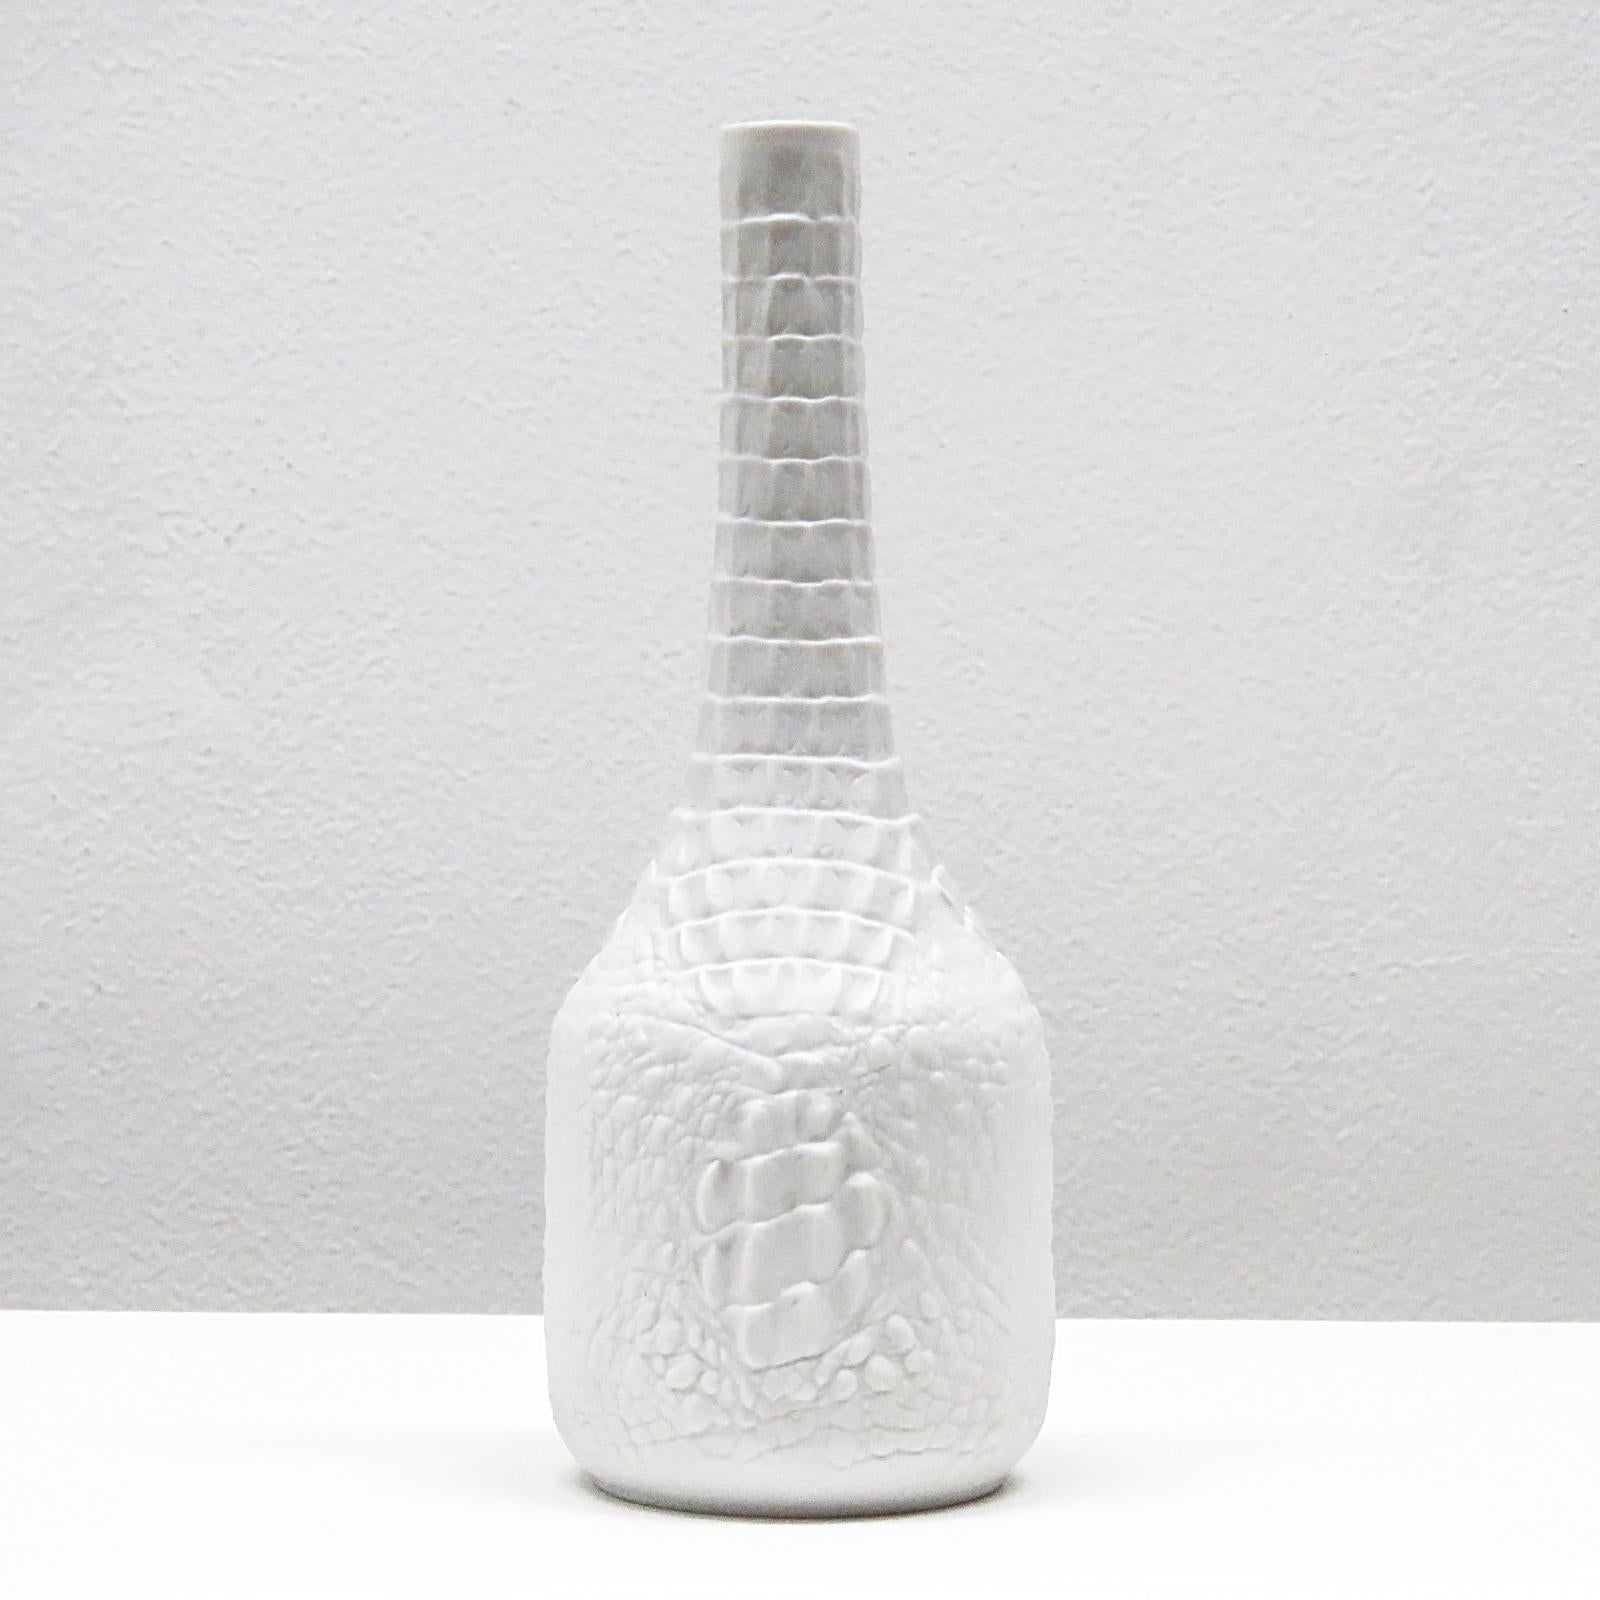 Grazioso vaso in porcellana di bisquit con un rettile in rilievo, modello n. 248 (versione alta).